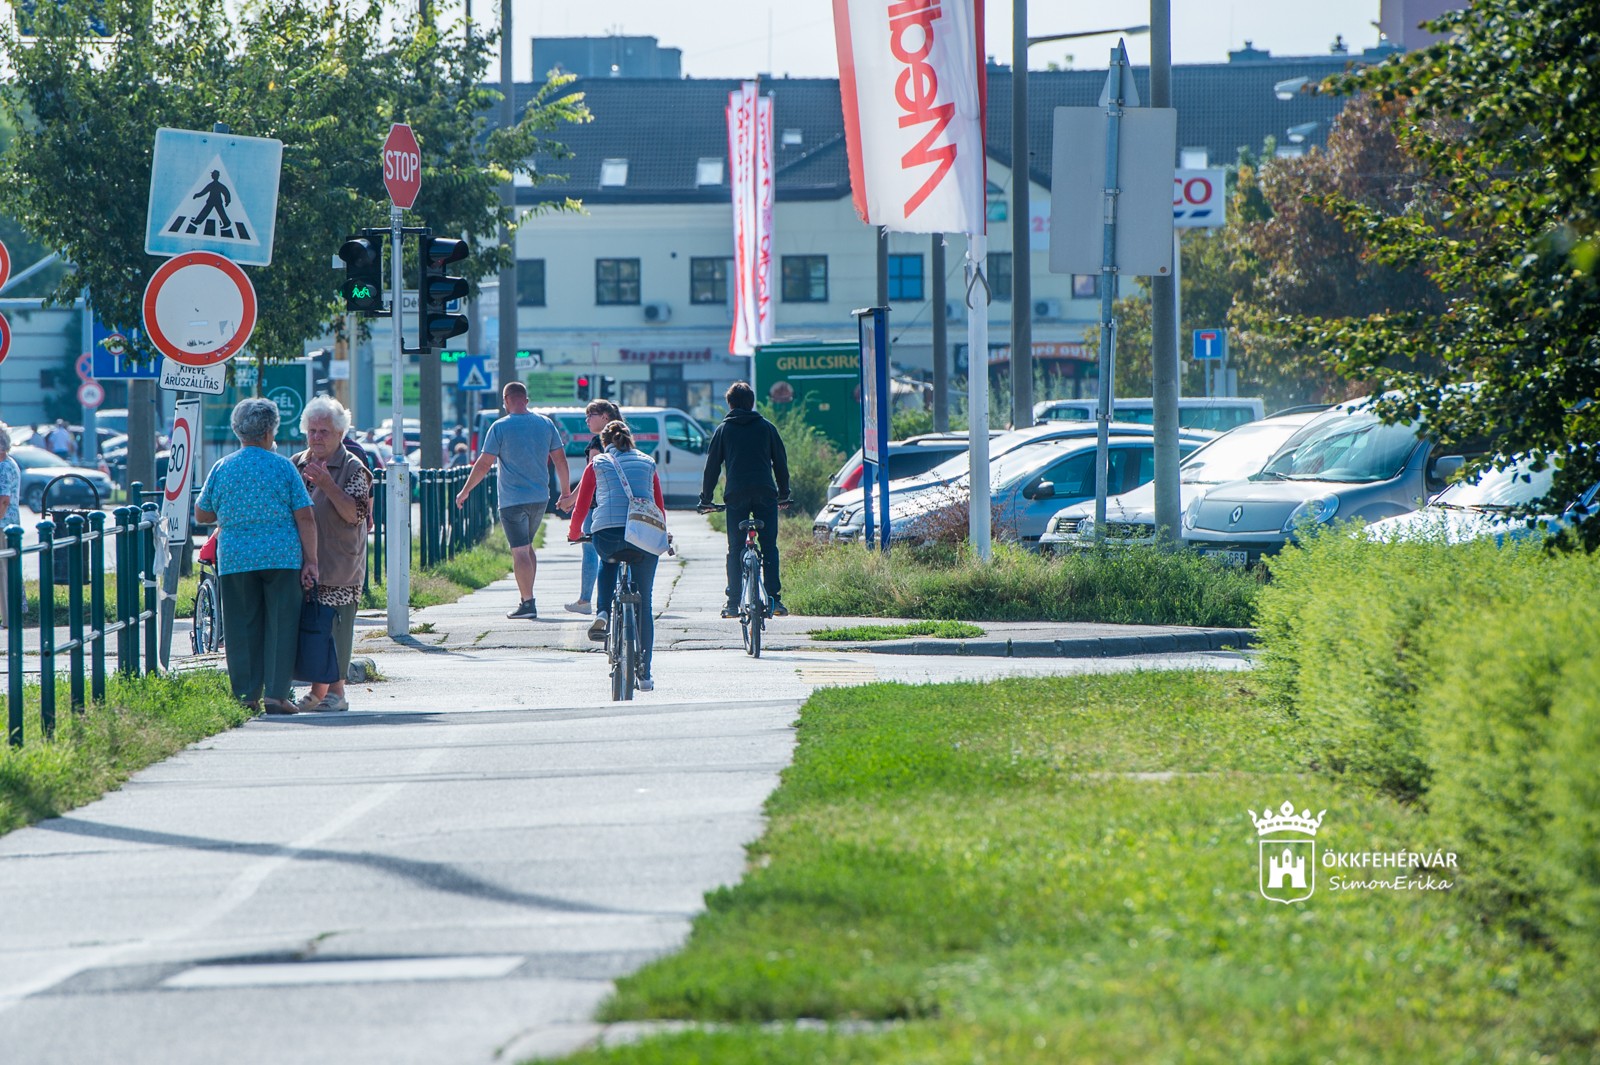 Átépítik a Palotai úti kerékpárutat - 18 km bicikliút épül Székesfehérvár belvárosának környékén